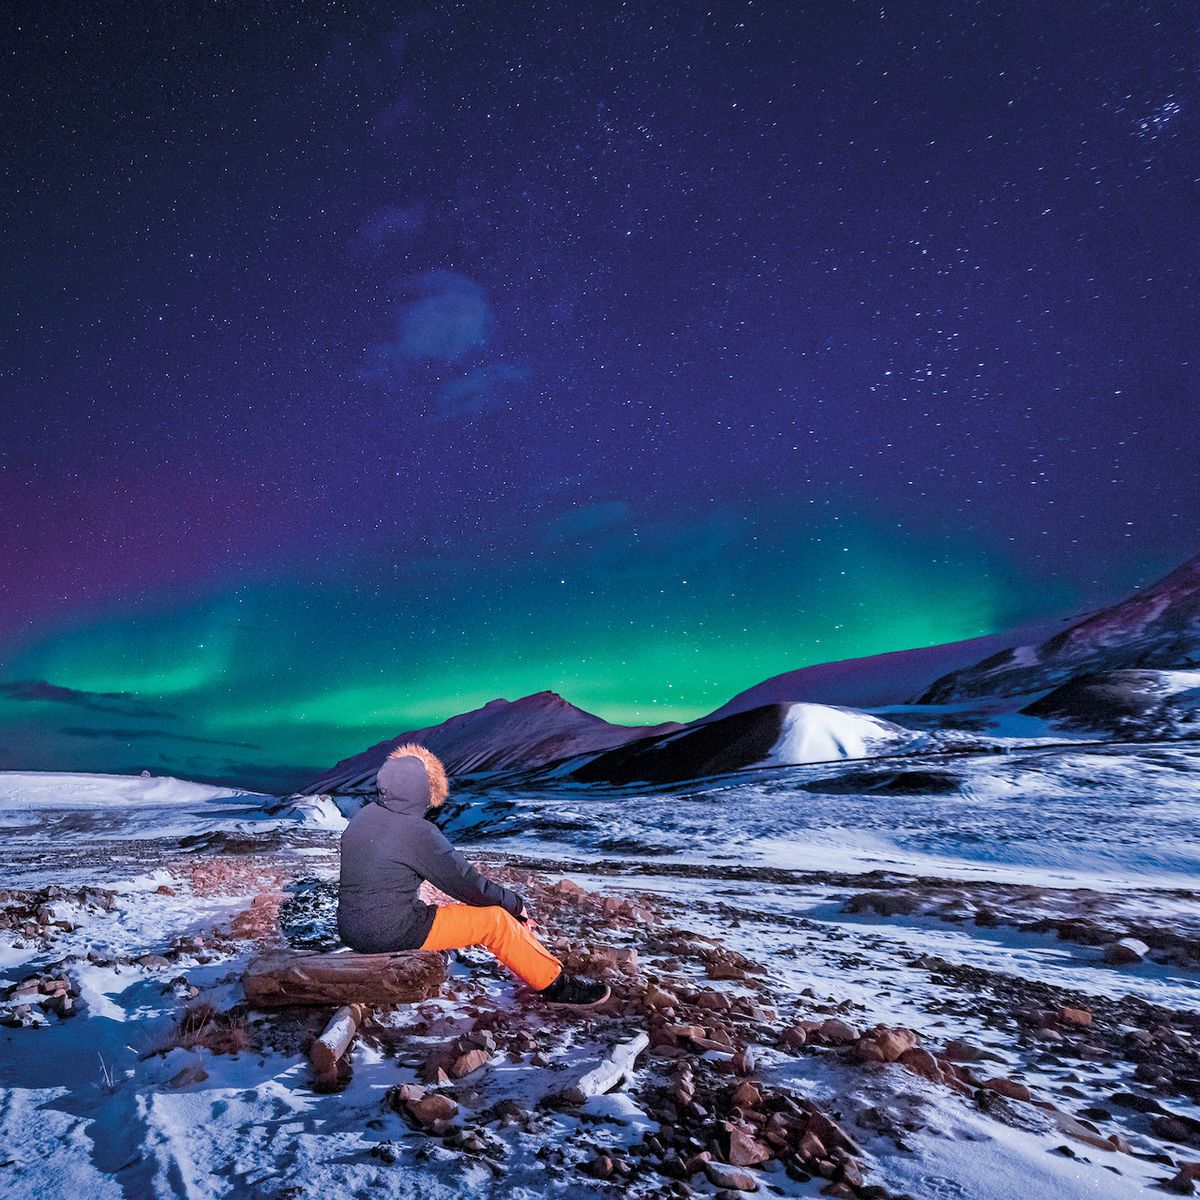 Období polární noci má své kouzlo. Špicberky patří mezi oblasti, kde je možné pozorovat impozantní světelný úkaz – polární záři.